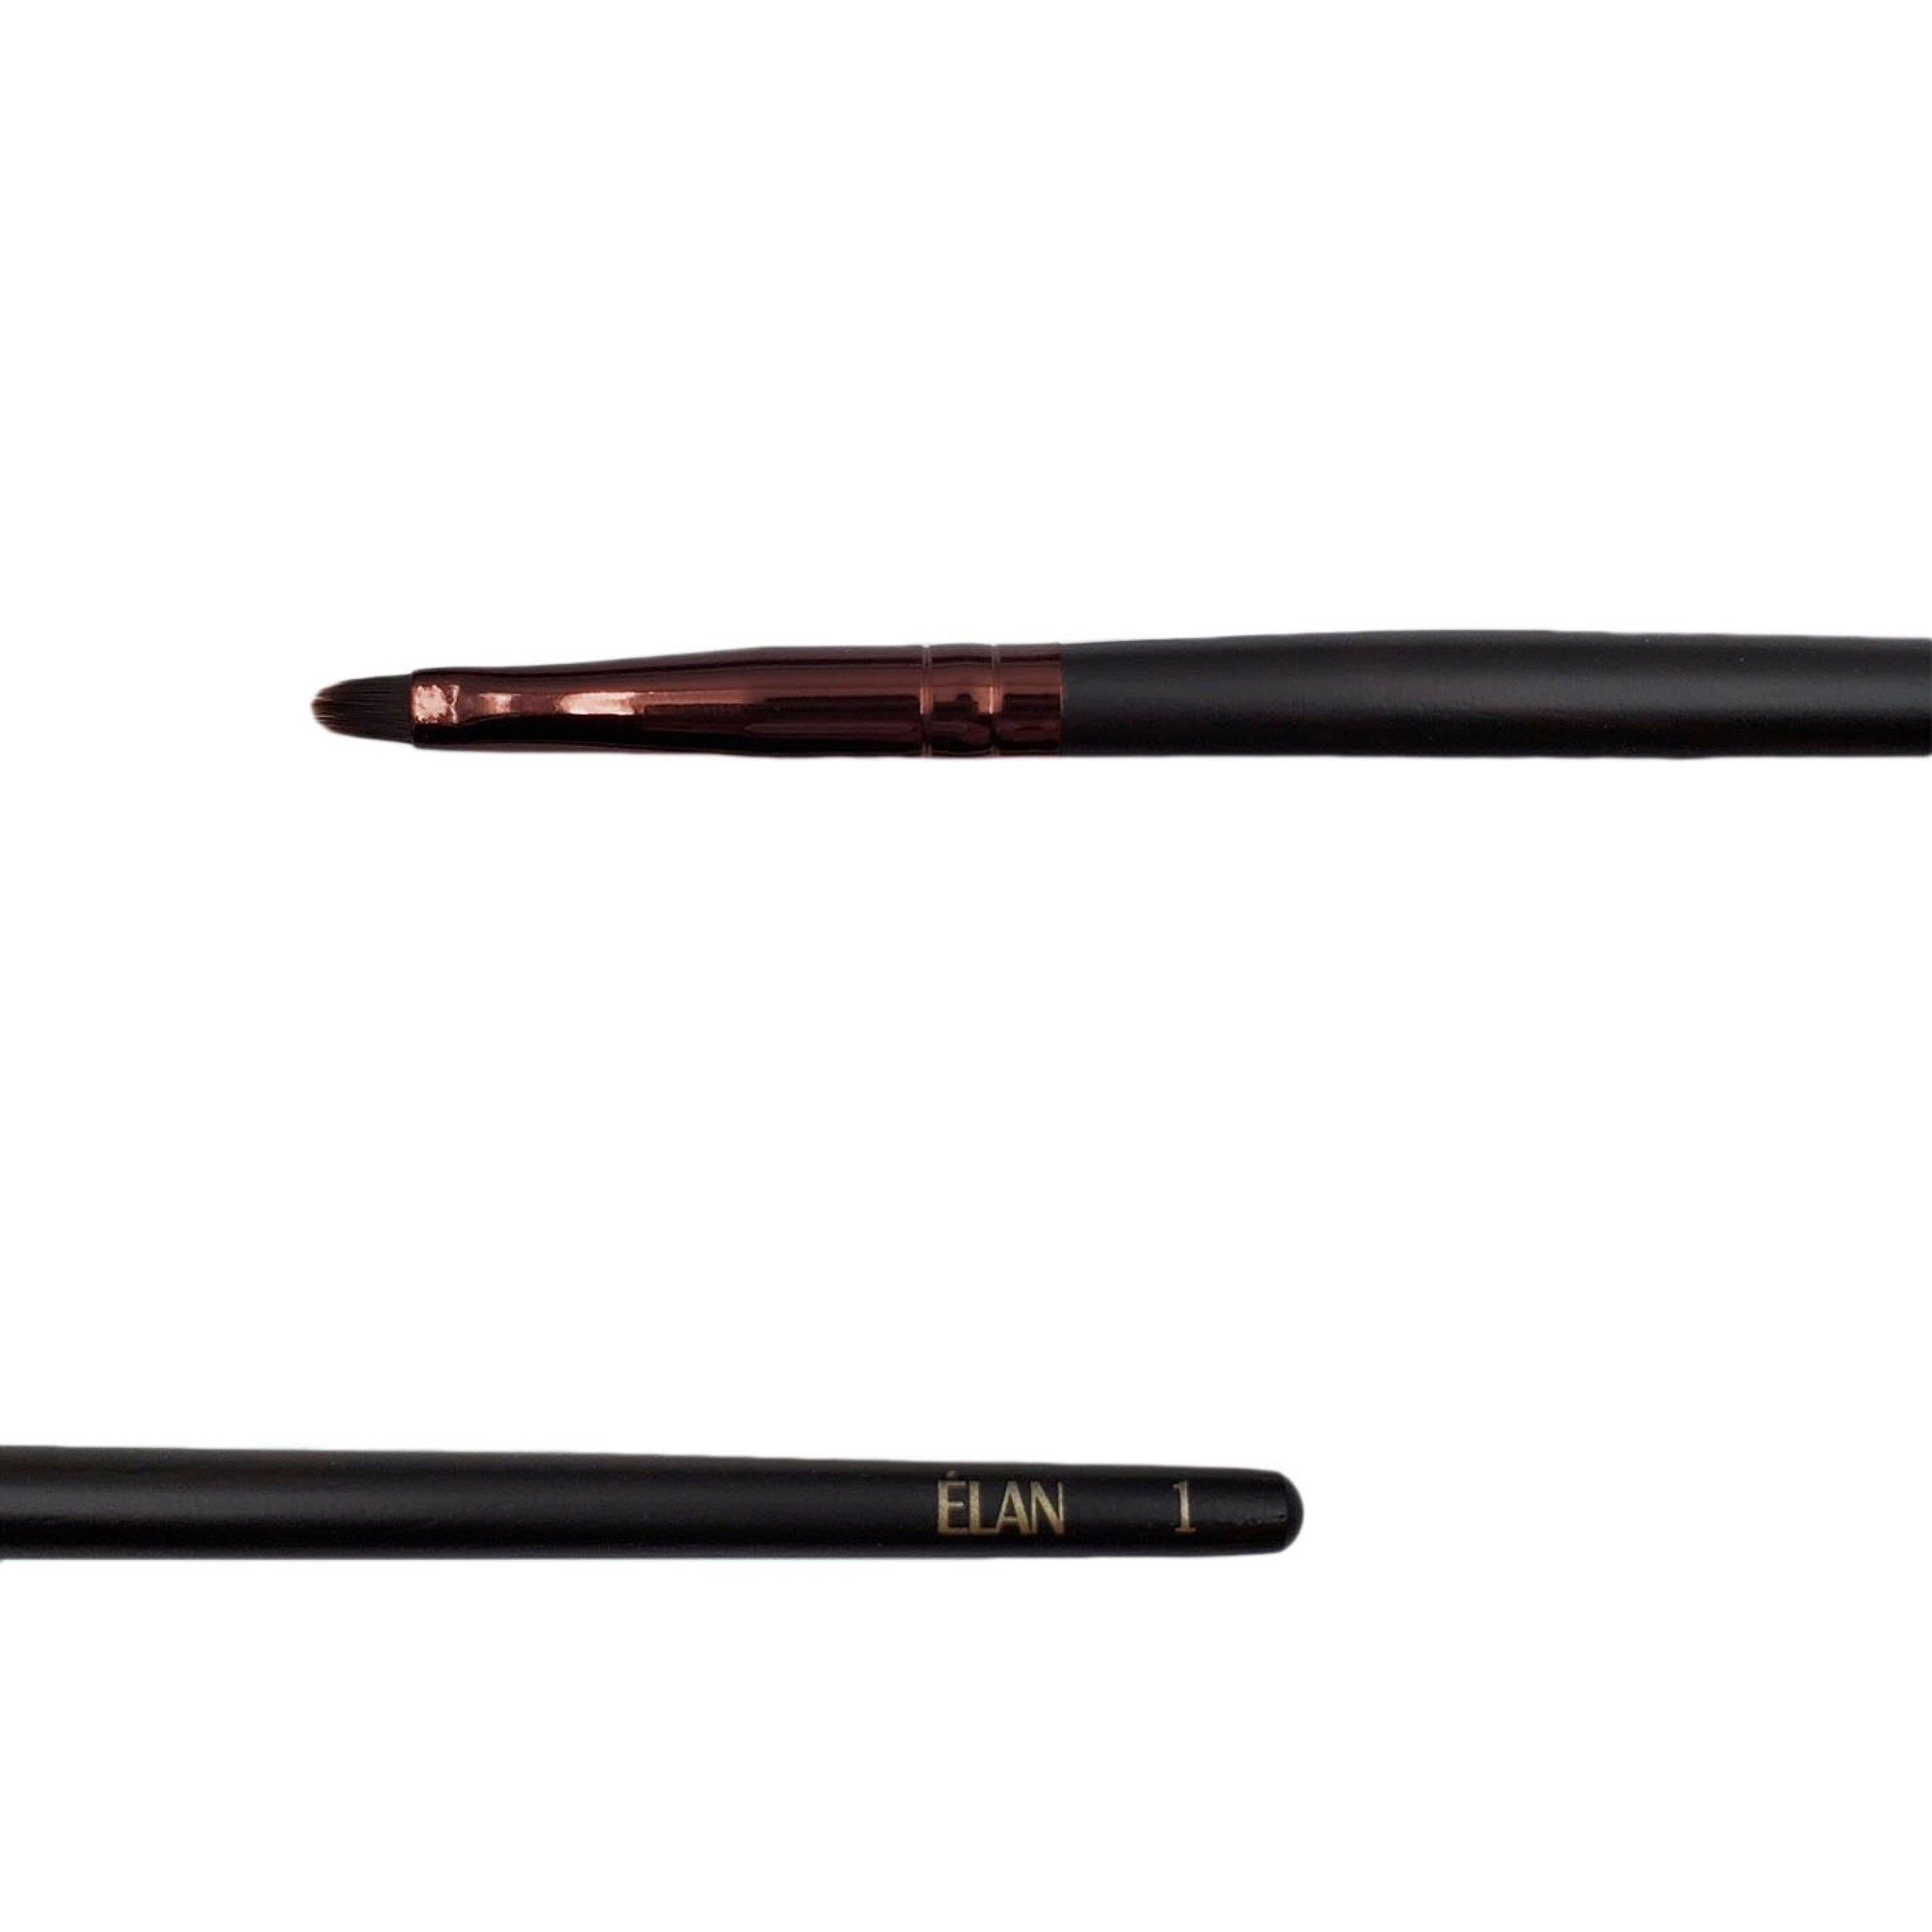 Elan wooden makeup brush 1 pointed tip